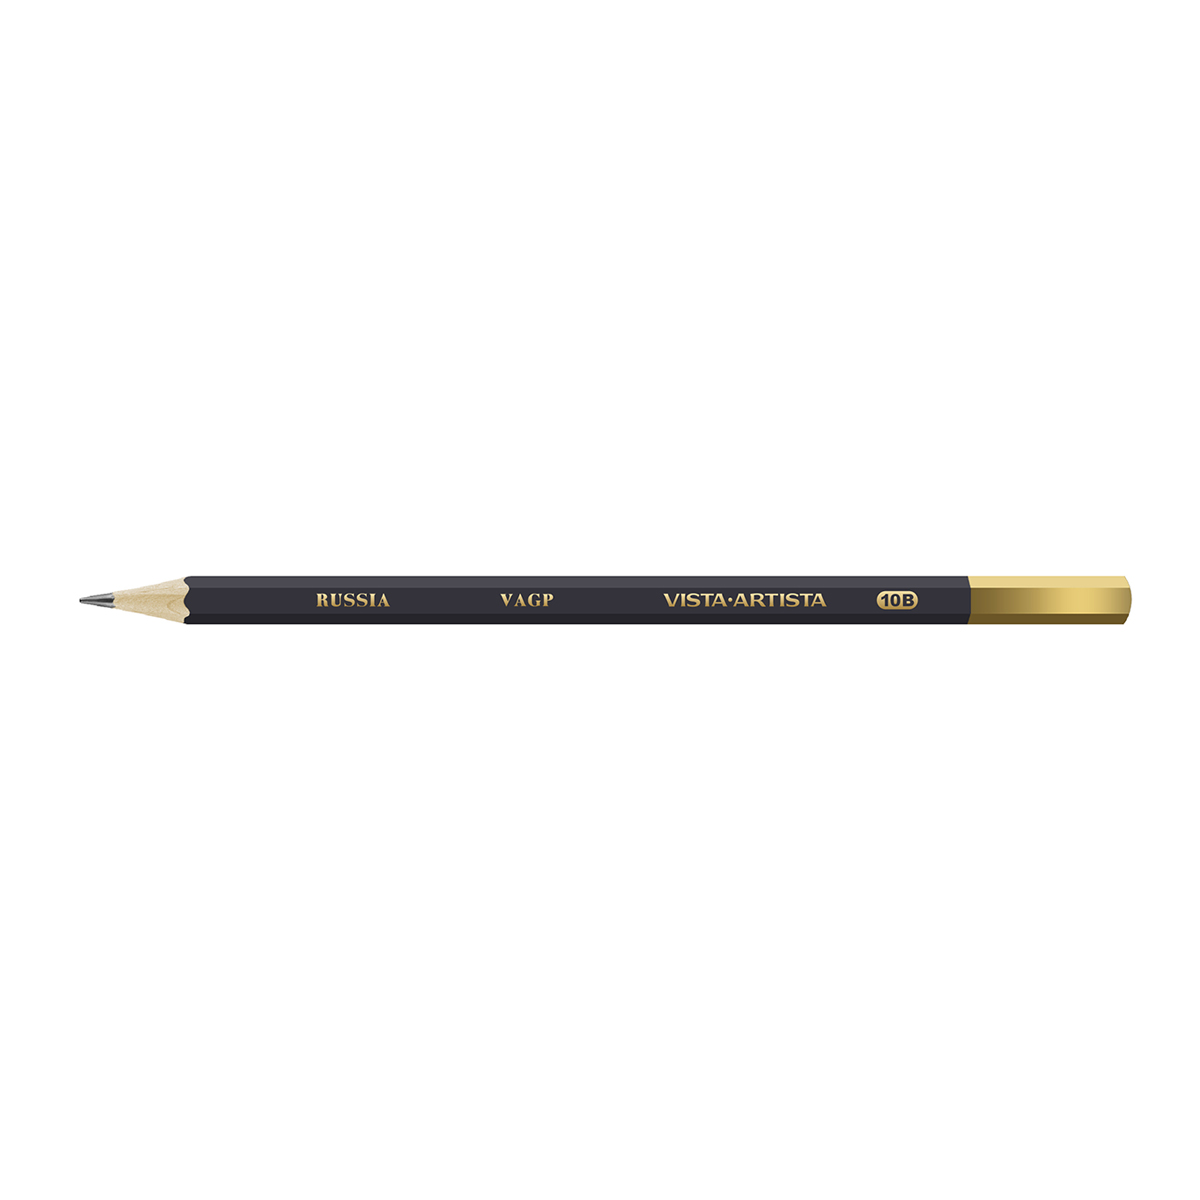 VISTA-ARTISTA VAGP Чернографитный карандаш заточенный 10М (10B) 10B . Фото 1.